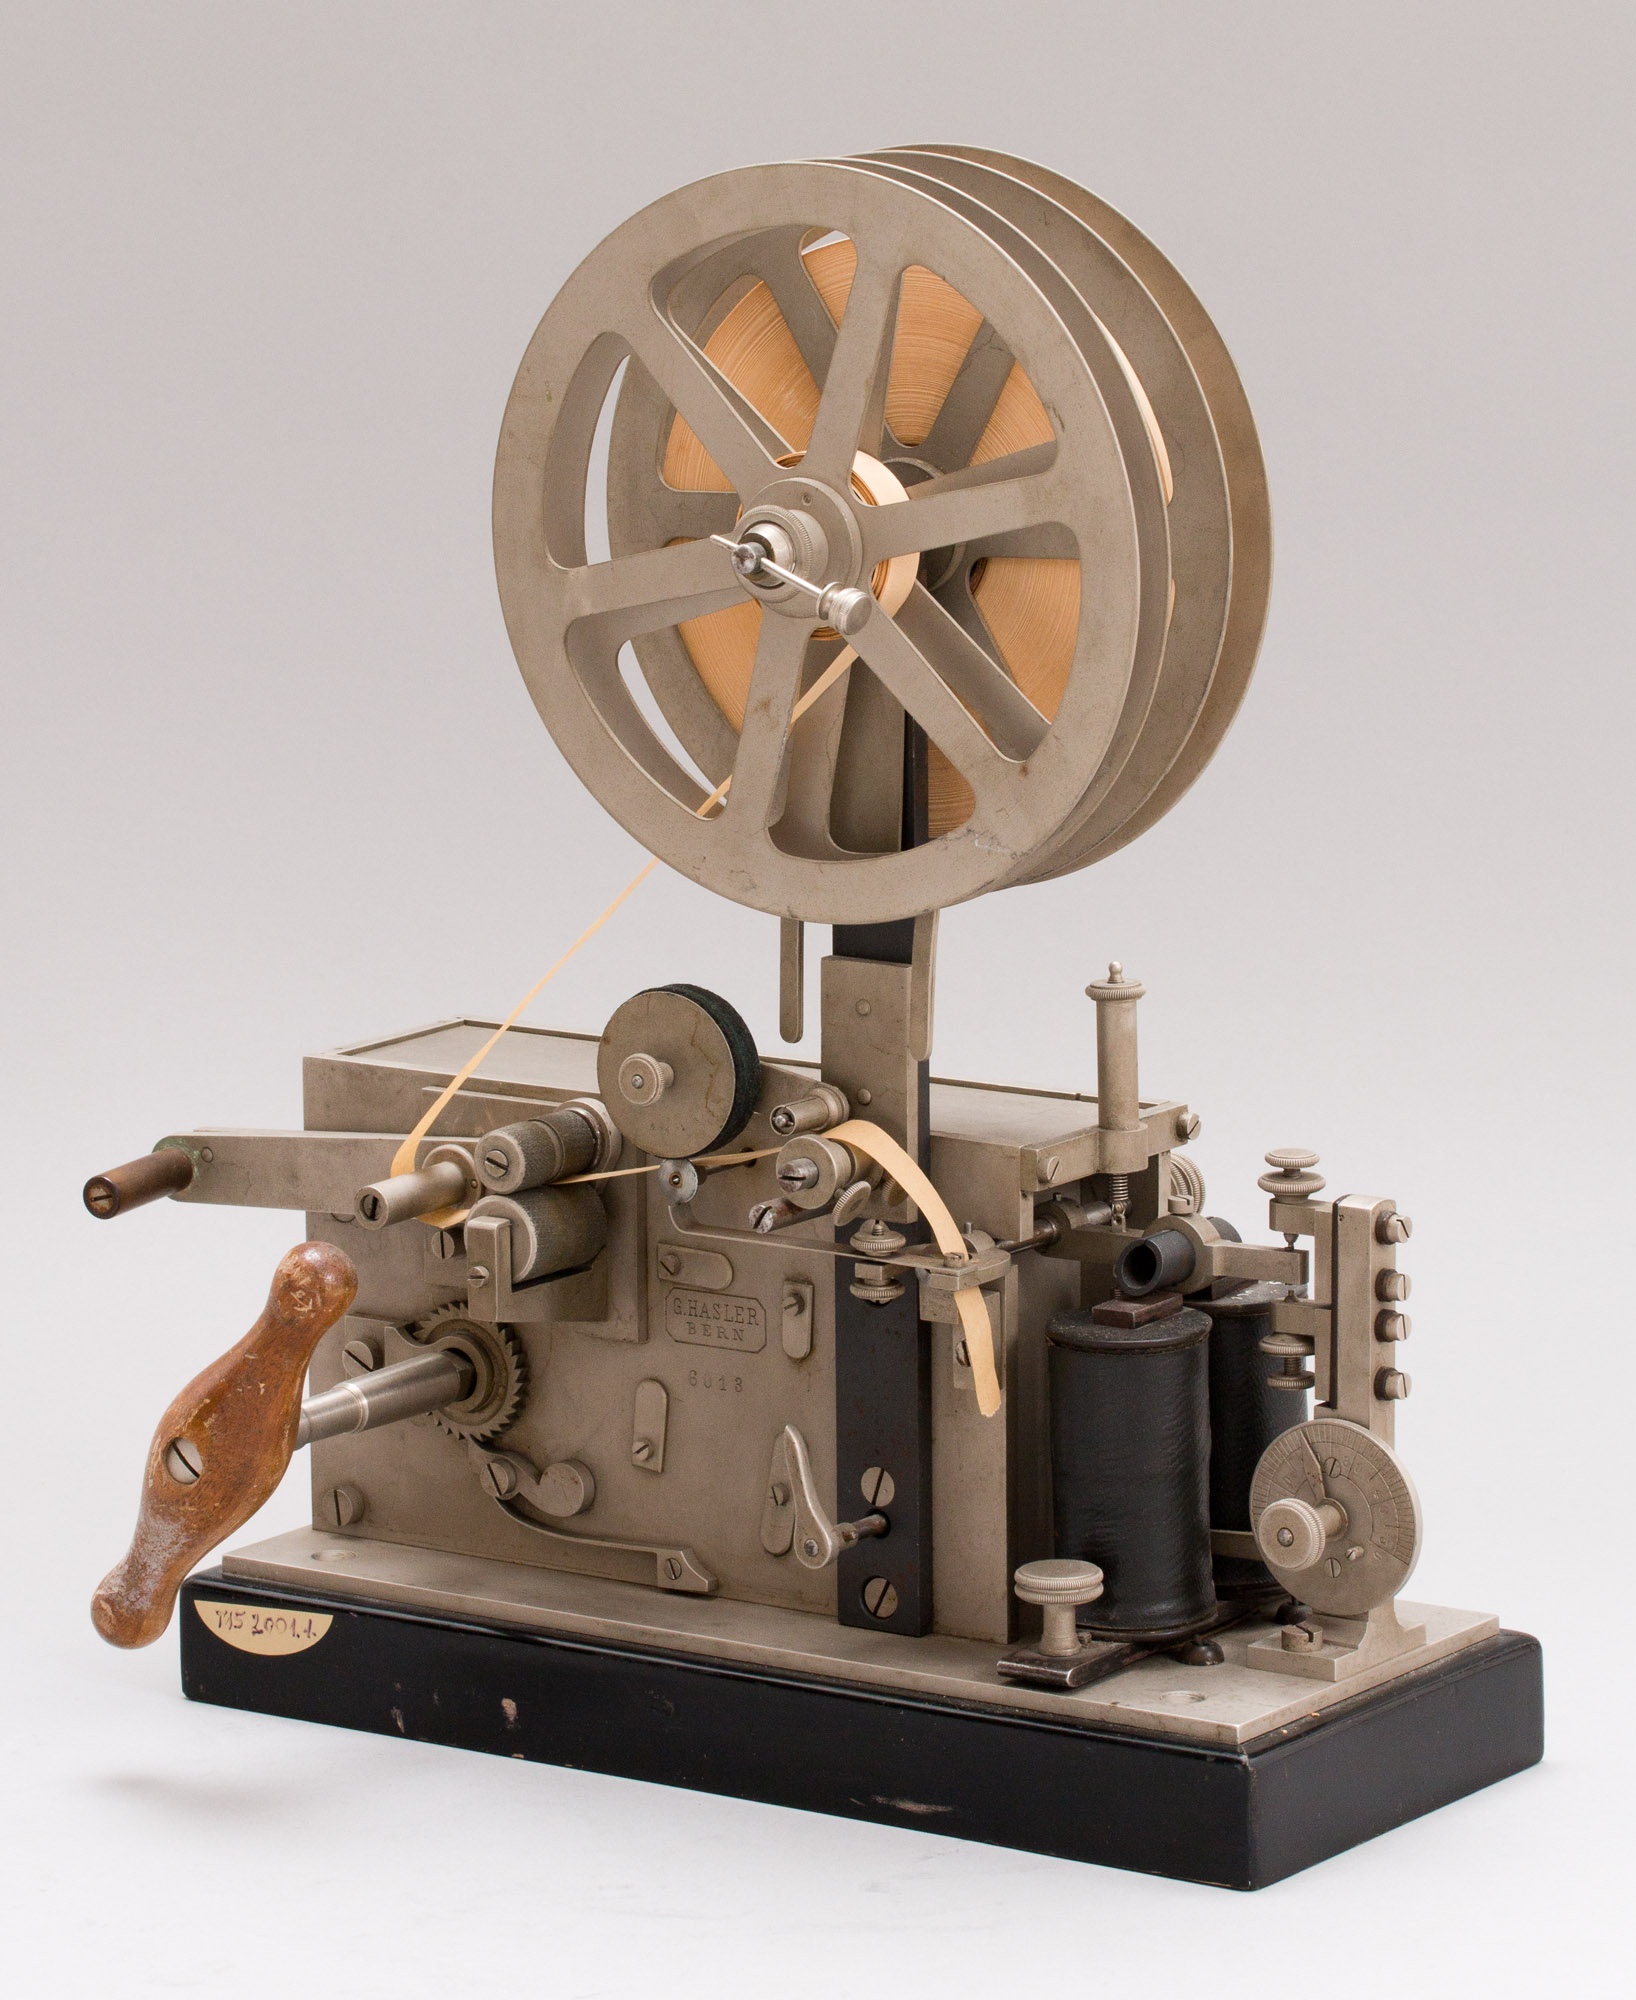 Morse rendszerű kékíró távíró, (Hasler-féle) (Postamúzeum CC BY-NC-SA)